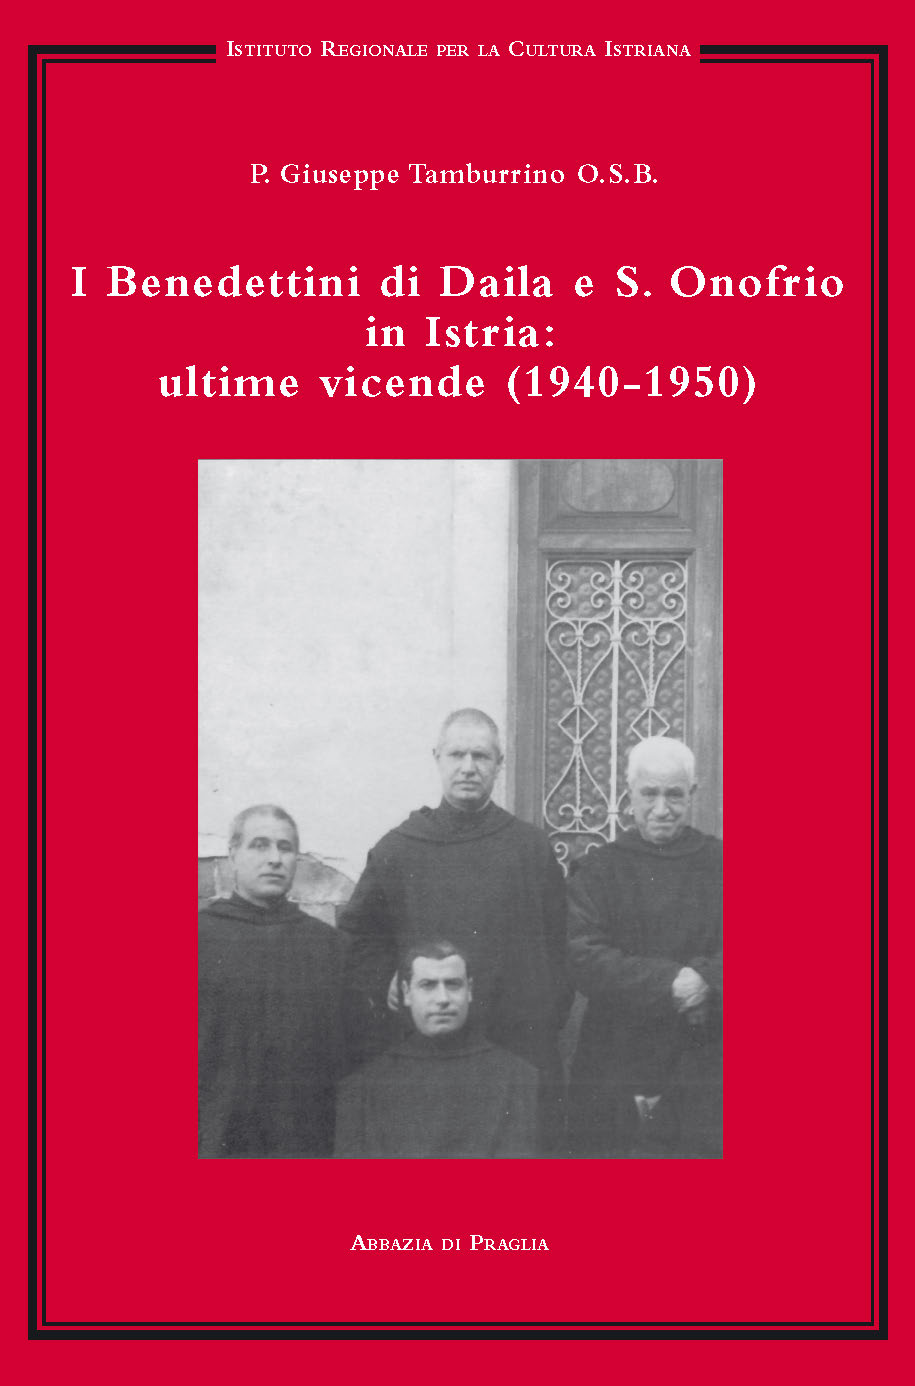 I BENEDETTINI DI DAILA E S. ONOFRIO IN ISTRIA: ULTIME VICENDE (1940-1950)